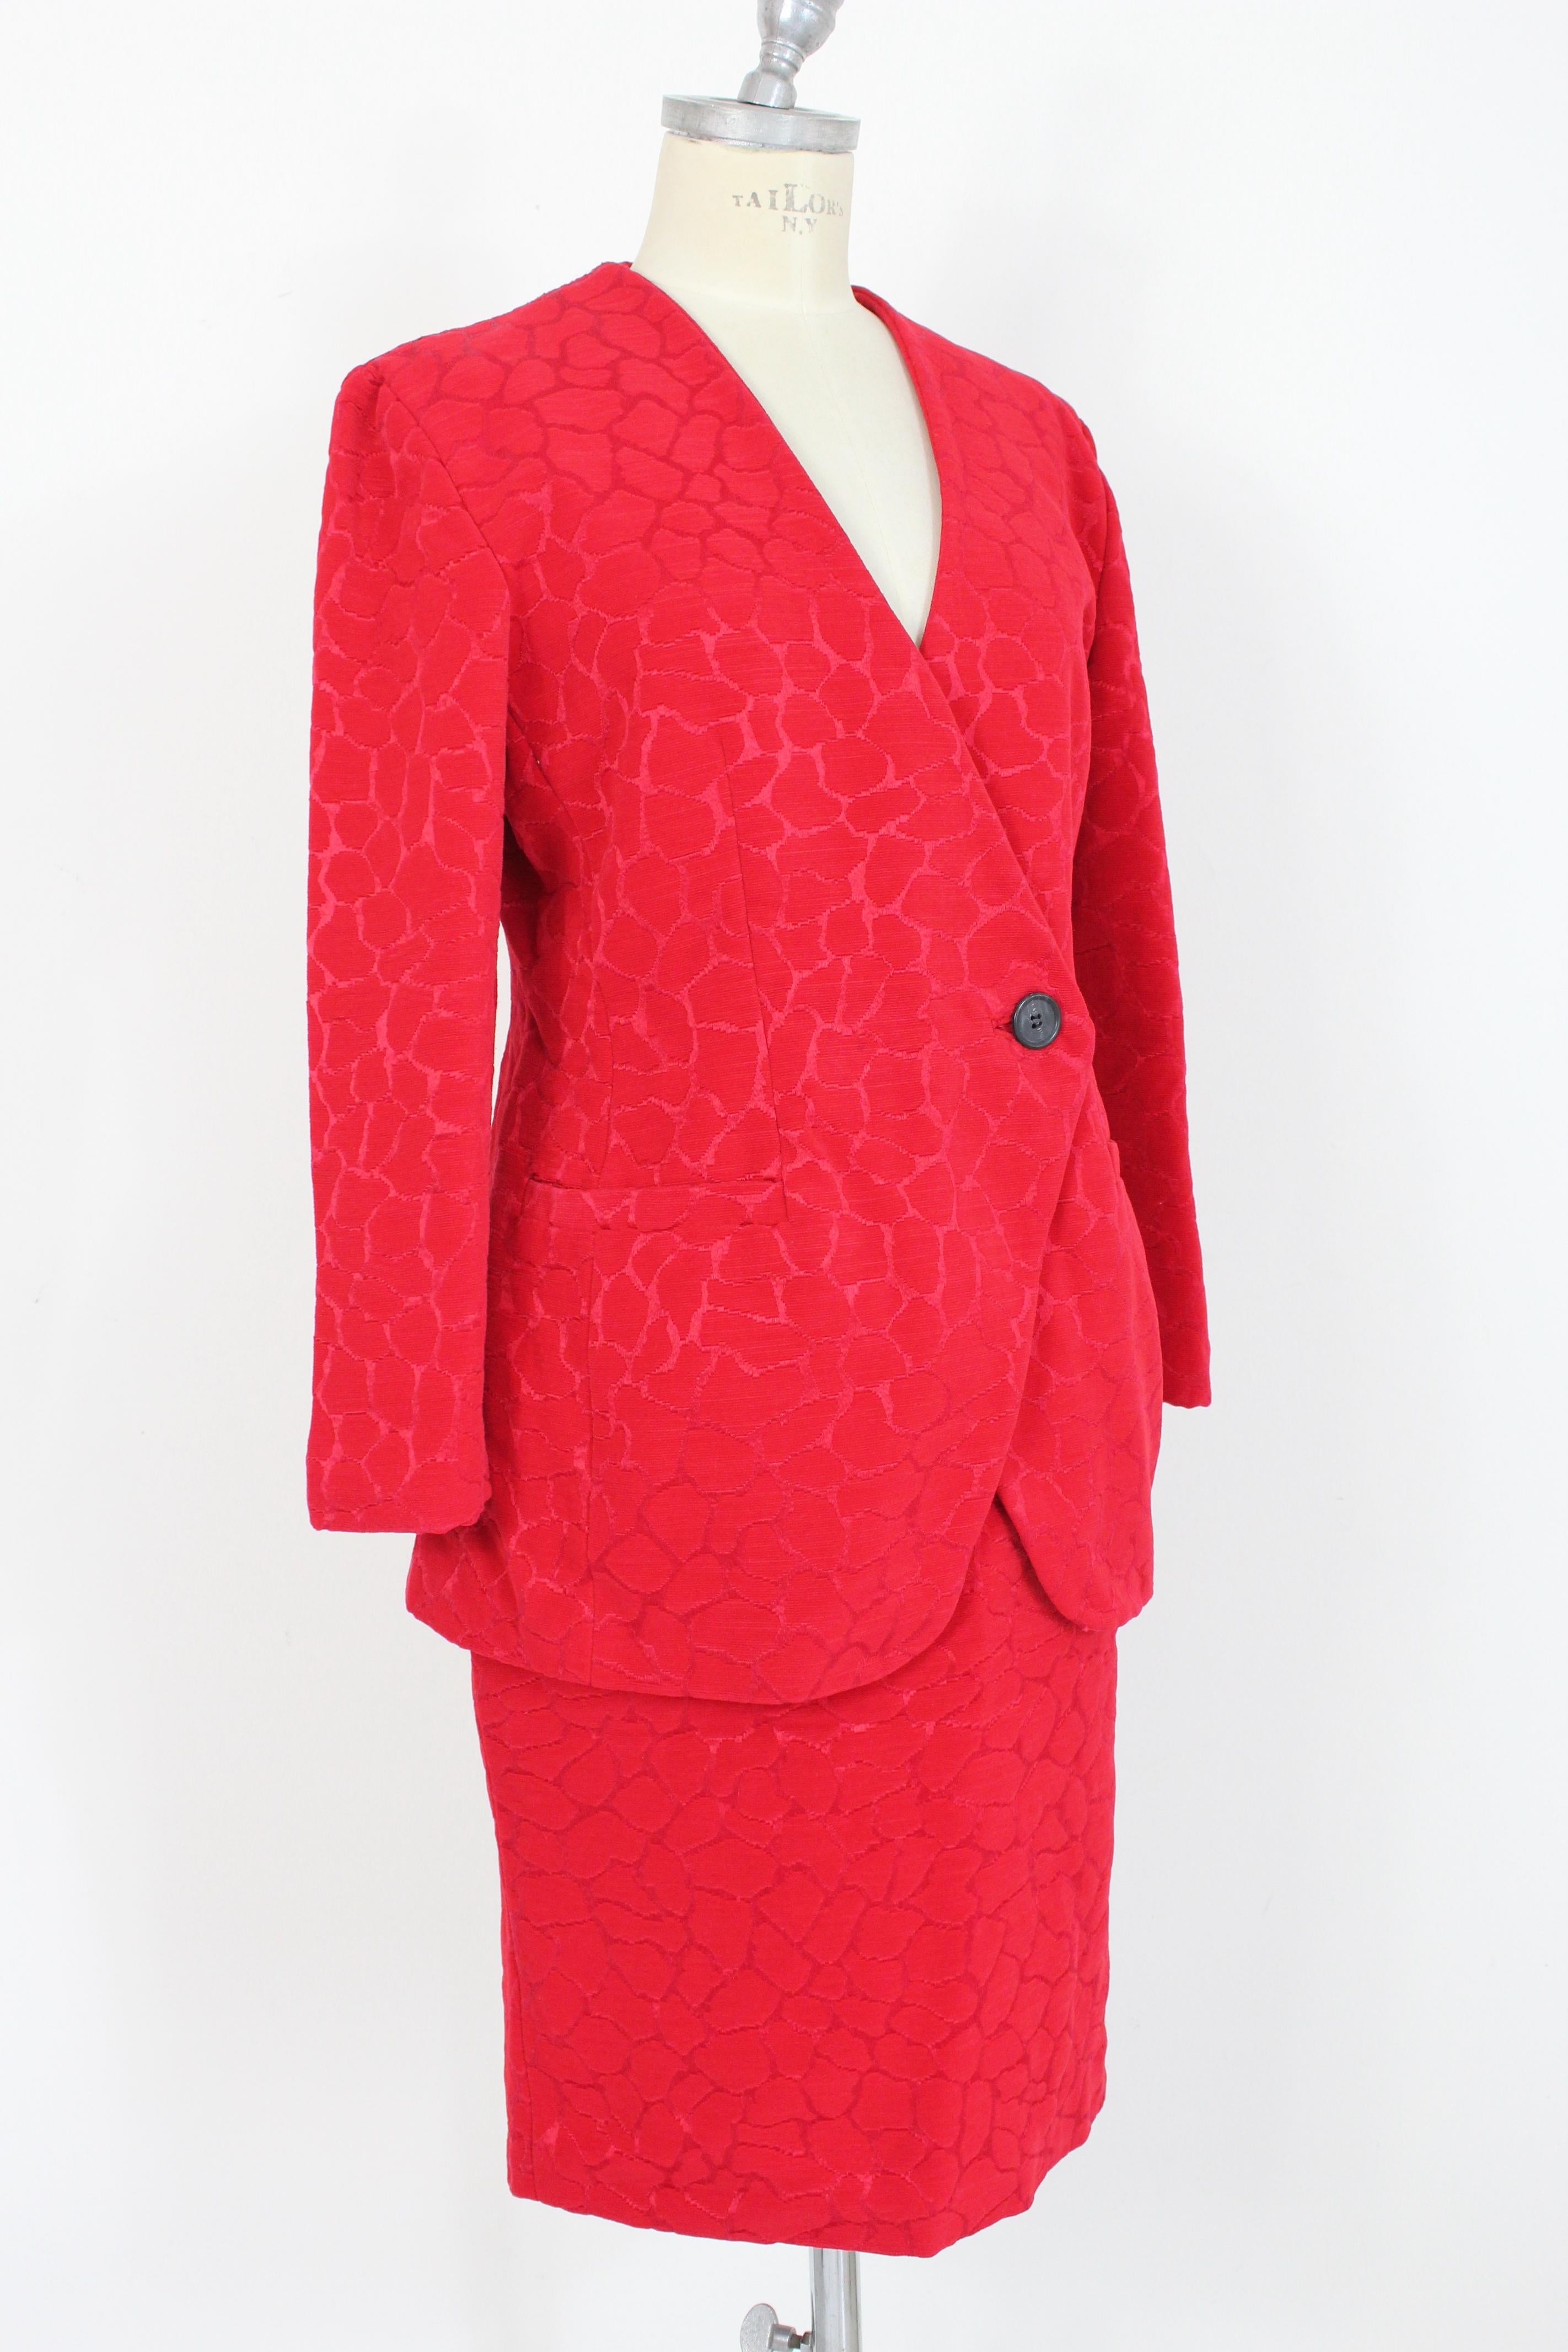 Women's Gai Mattiolo Red Silk Damask Evening Skirt Suit